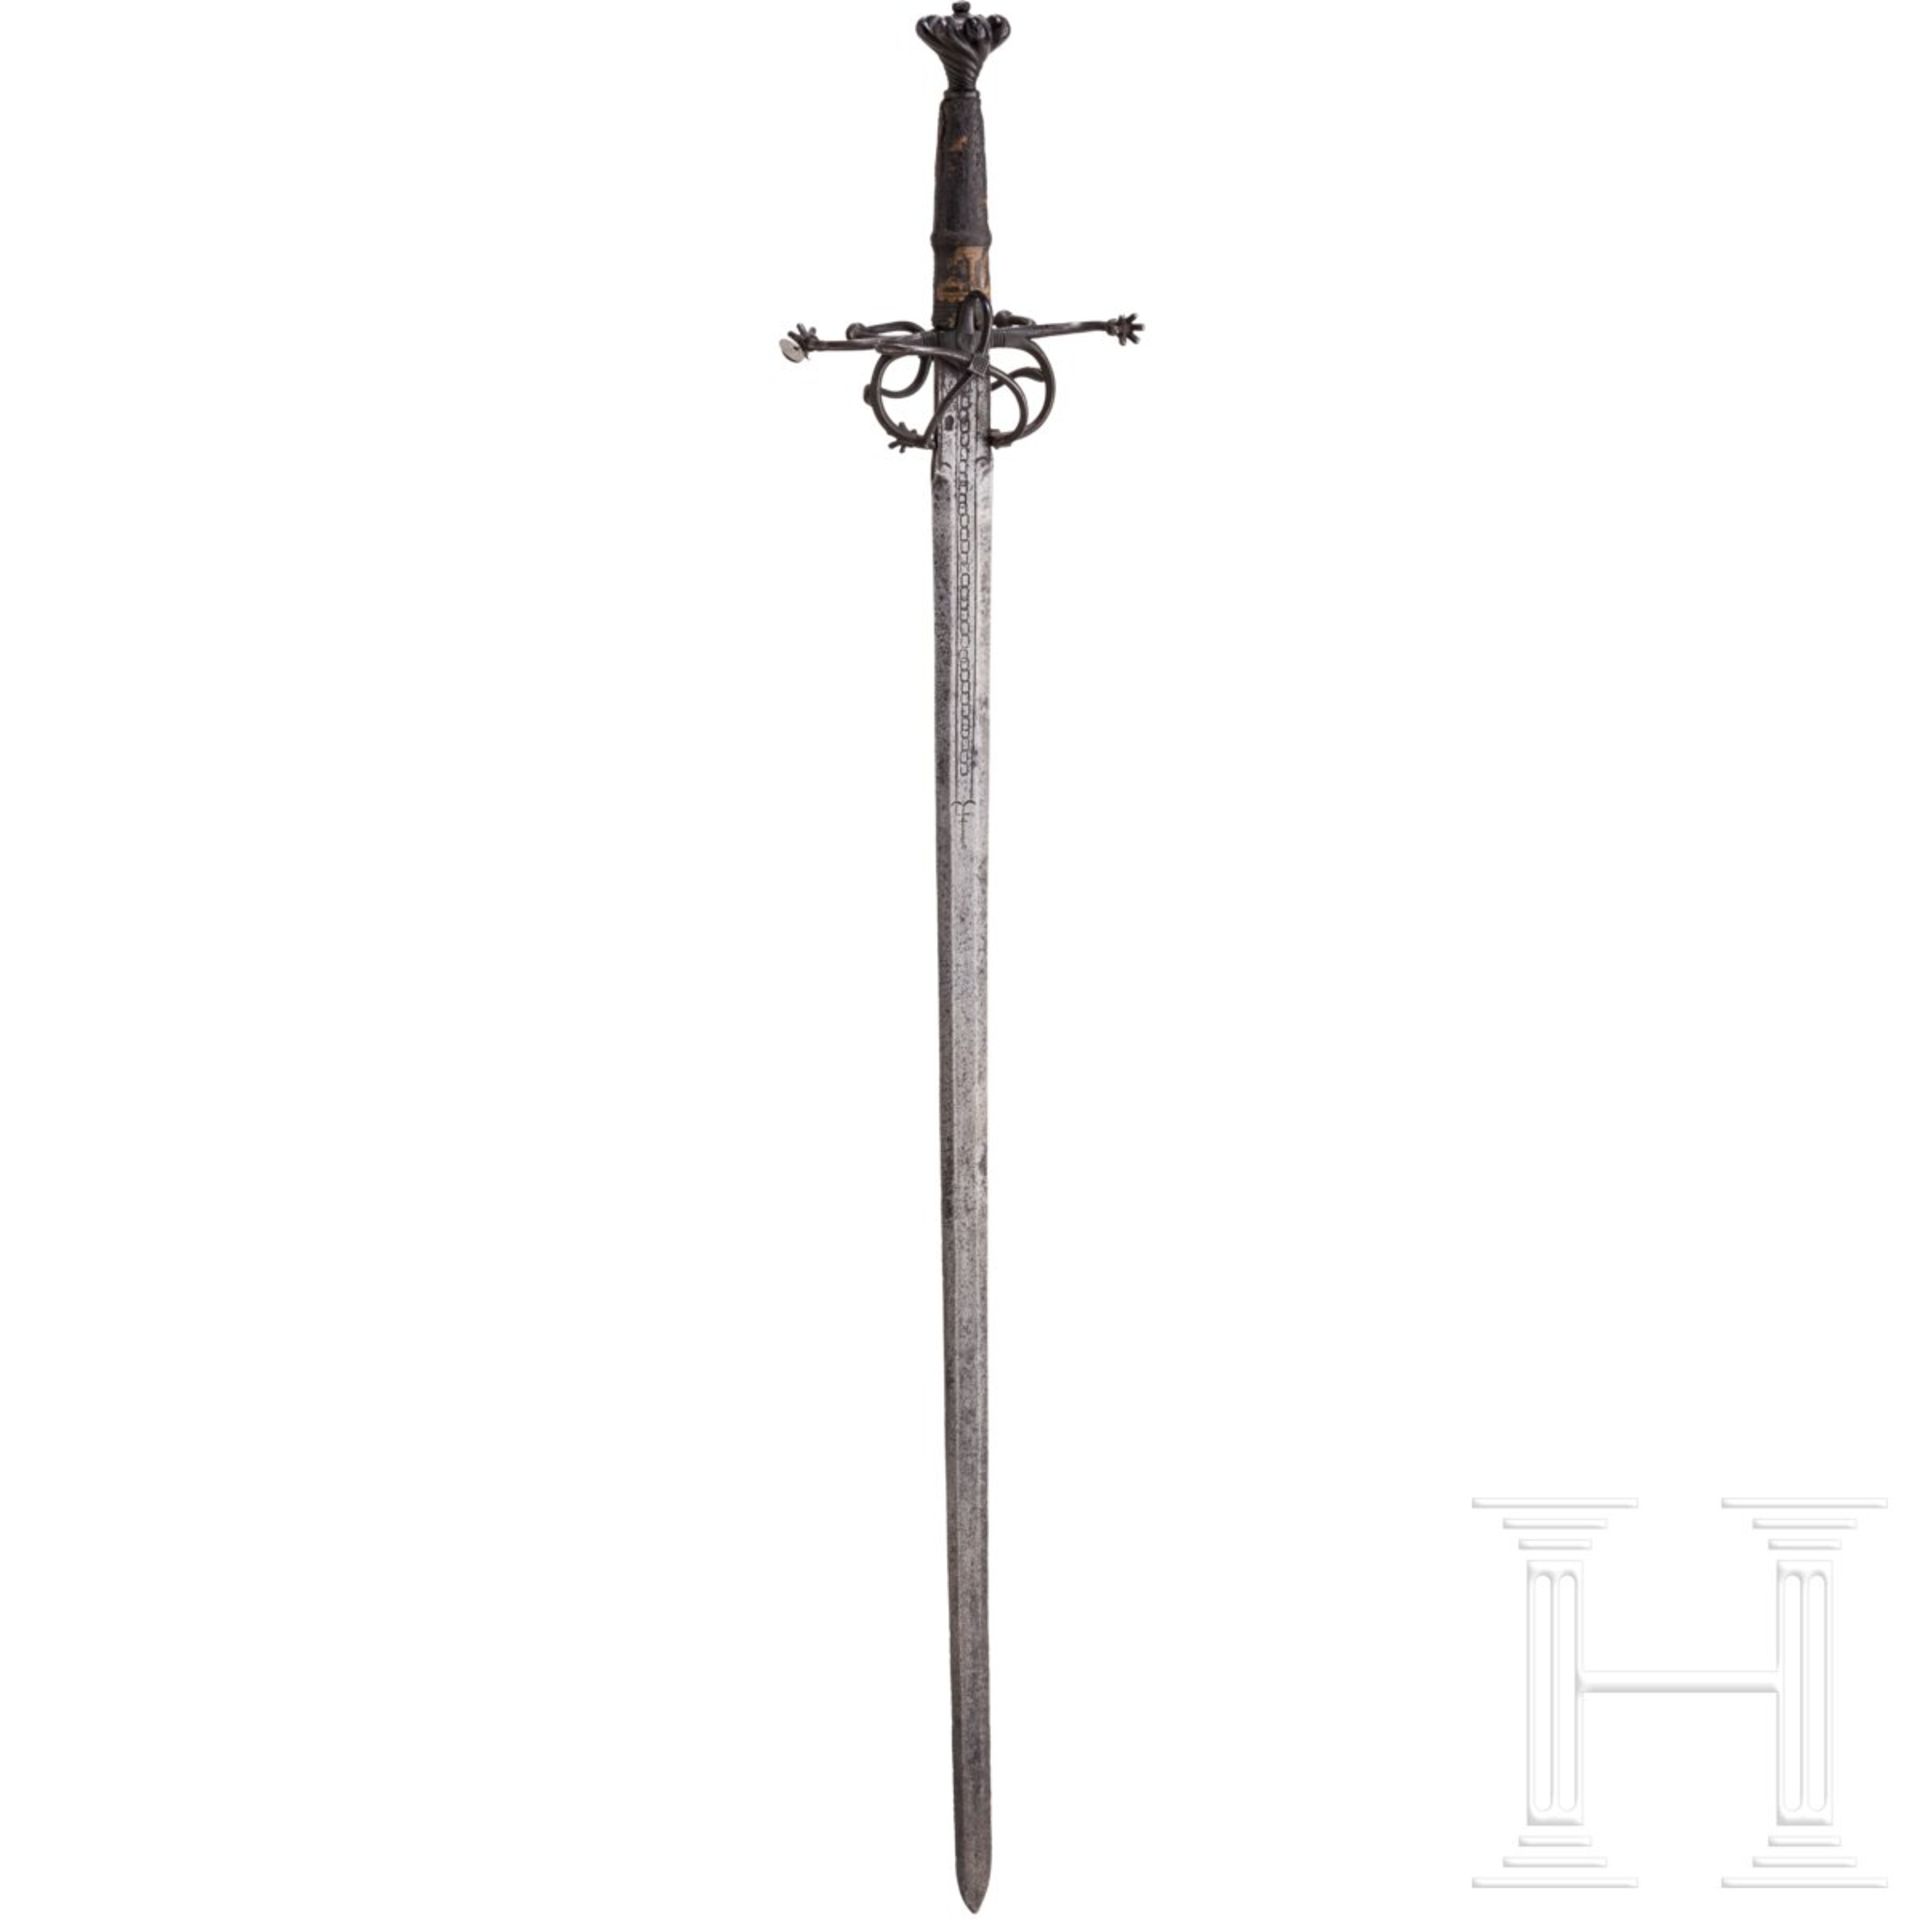 Ritterliches Schwert zu anderthalb Hand, süddeutsch, um 1530